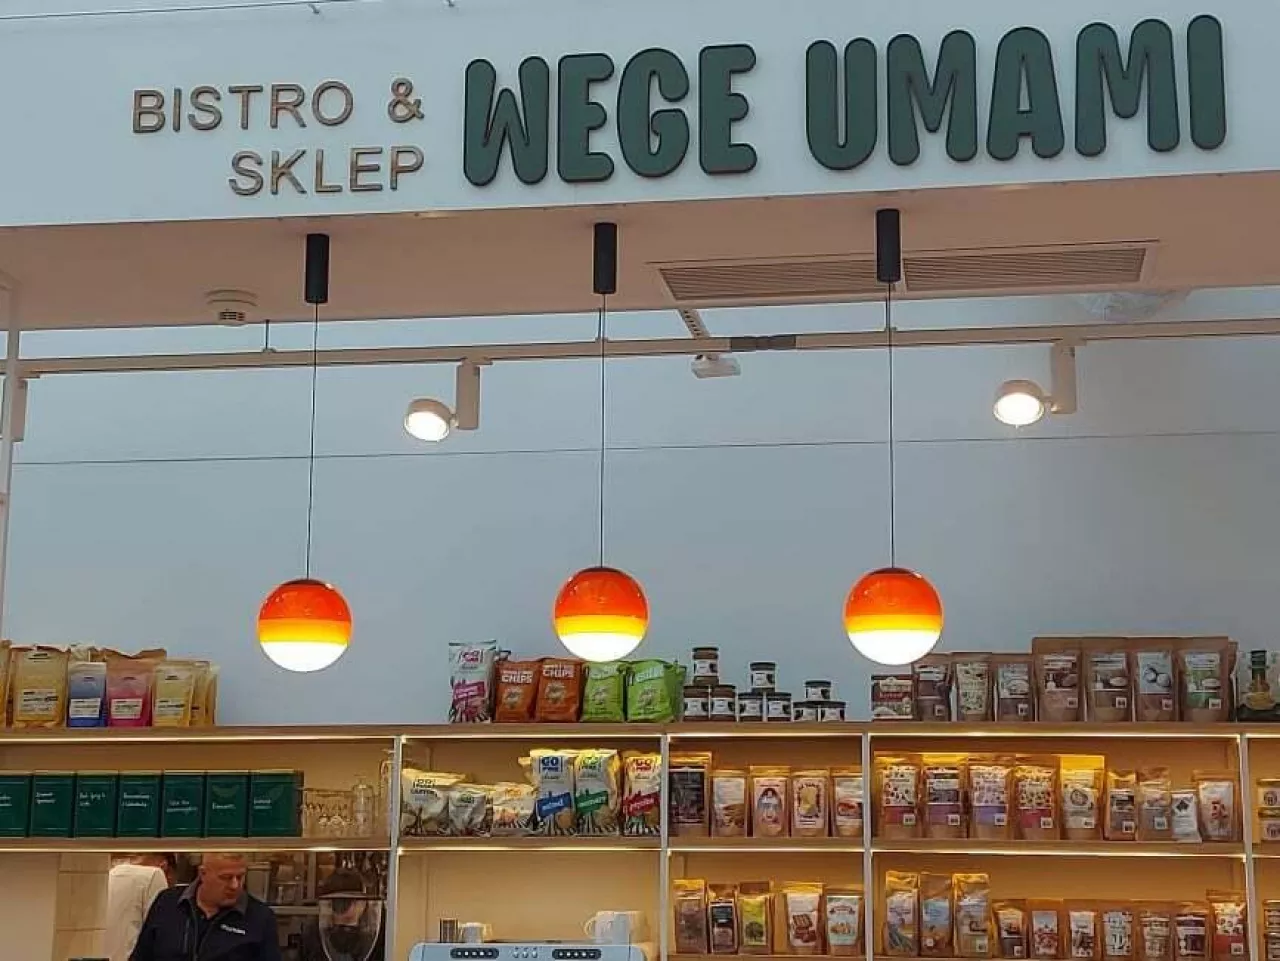 Wege Umami to koncept restauracyjny łączący zróżnicowaną kuchnię wegetariańską i wegańską ze sprzedażą produktów spożywczych (wiadomoscihandlowe.pl)